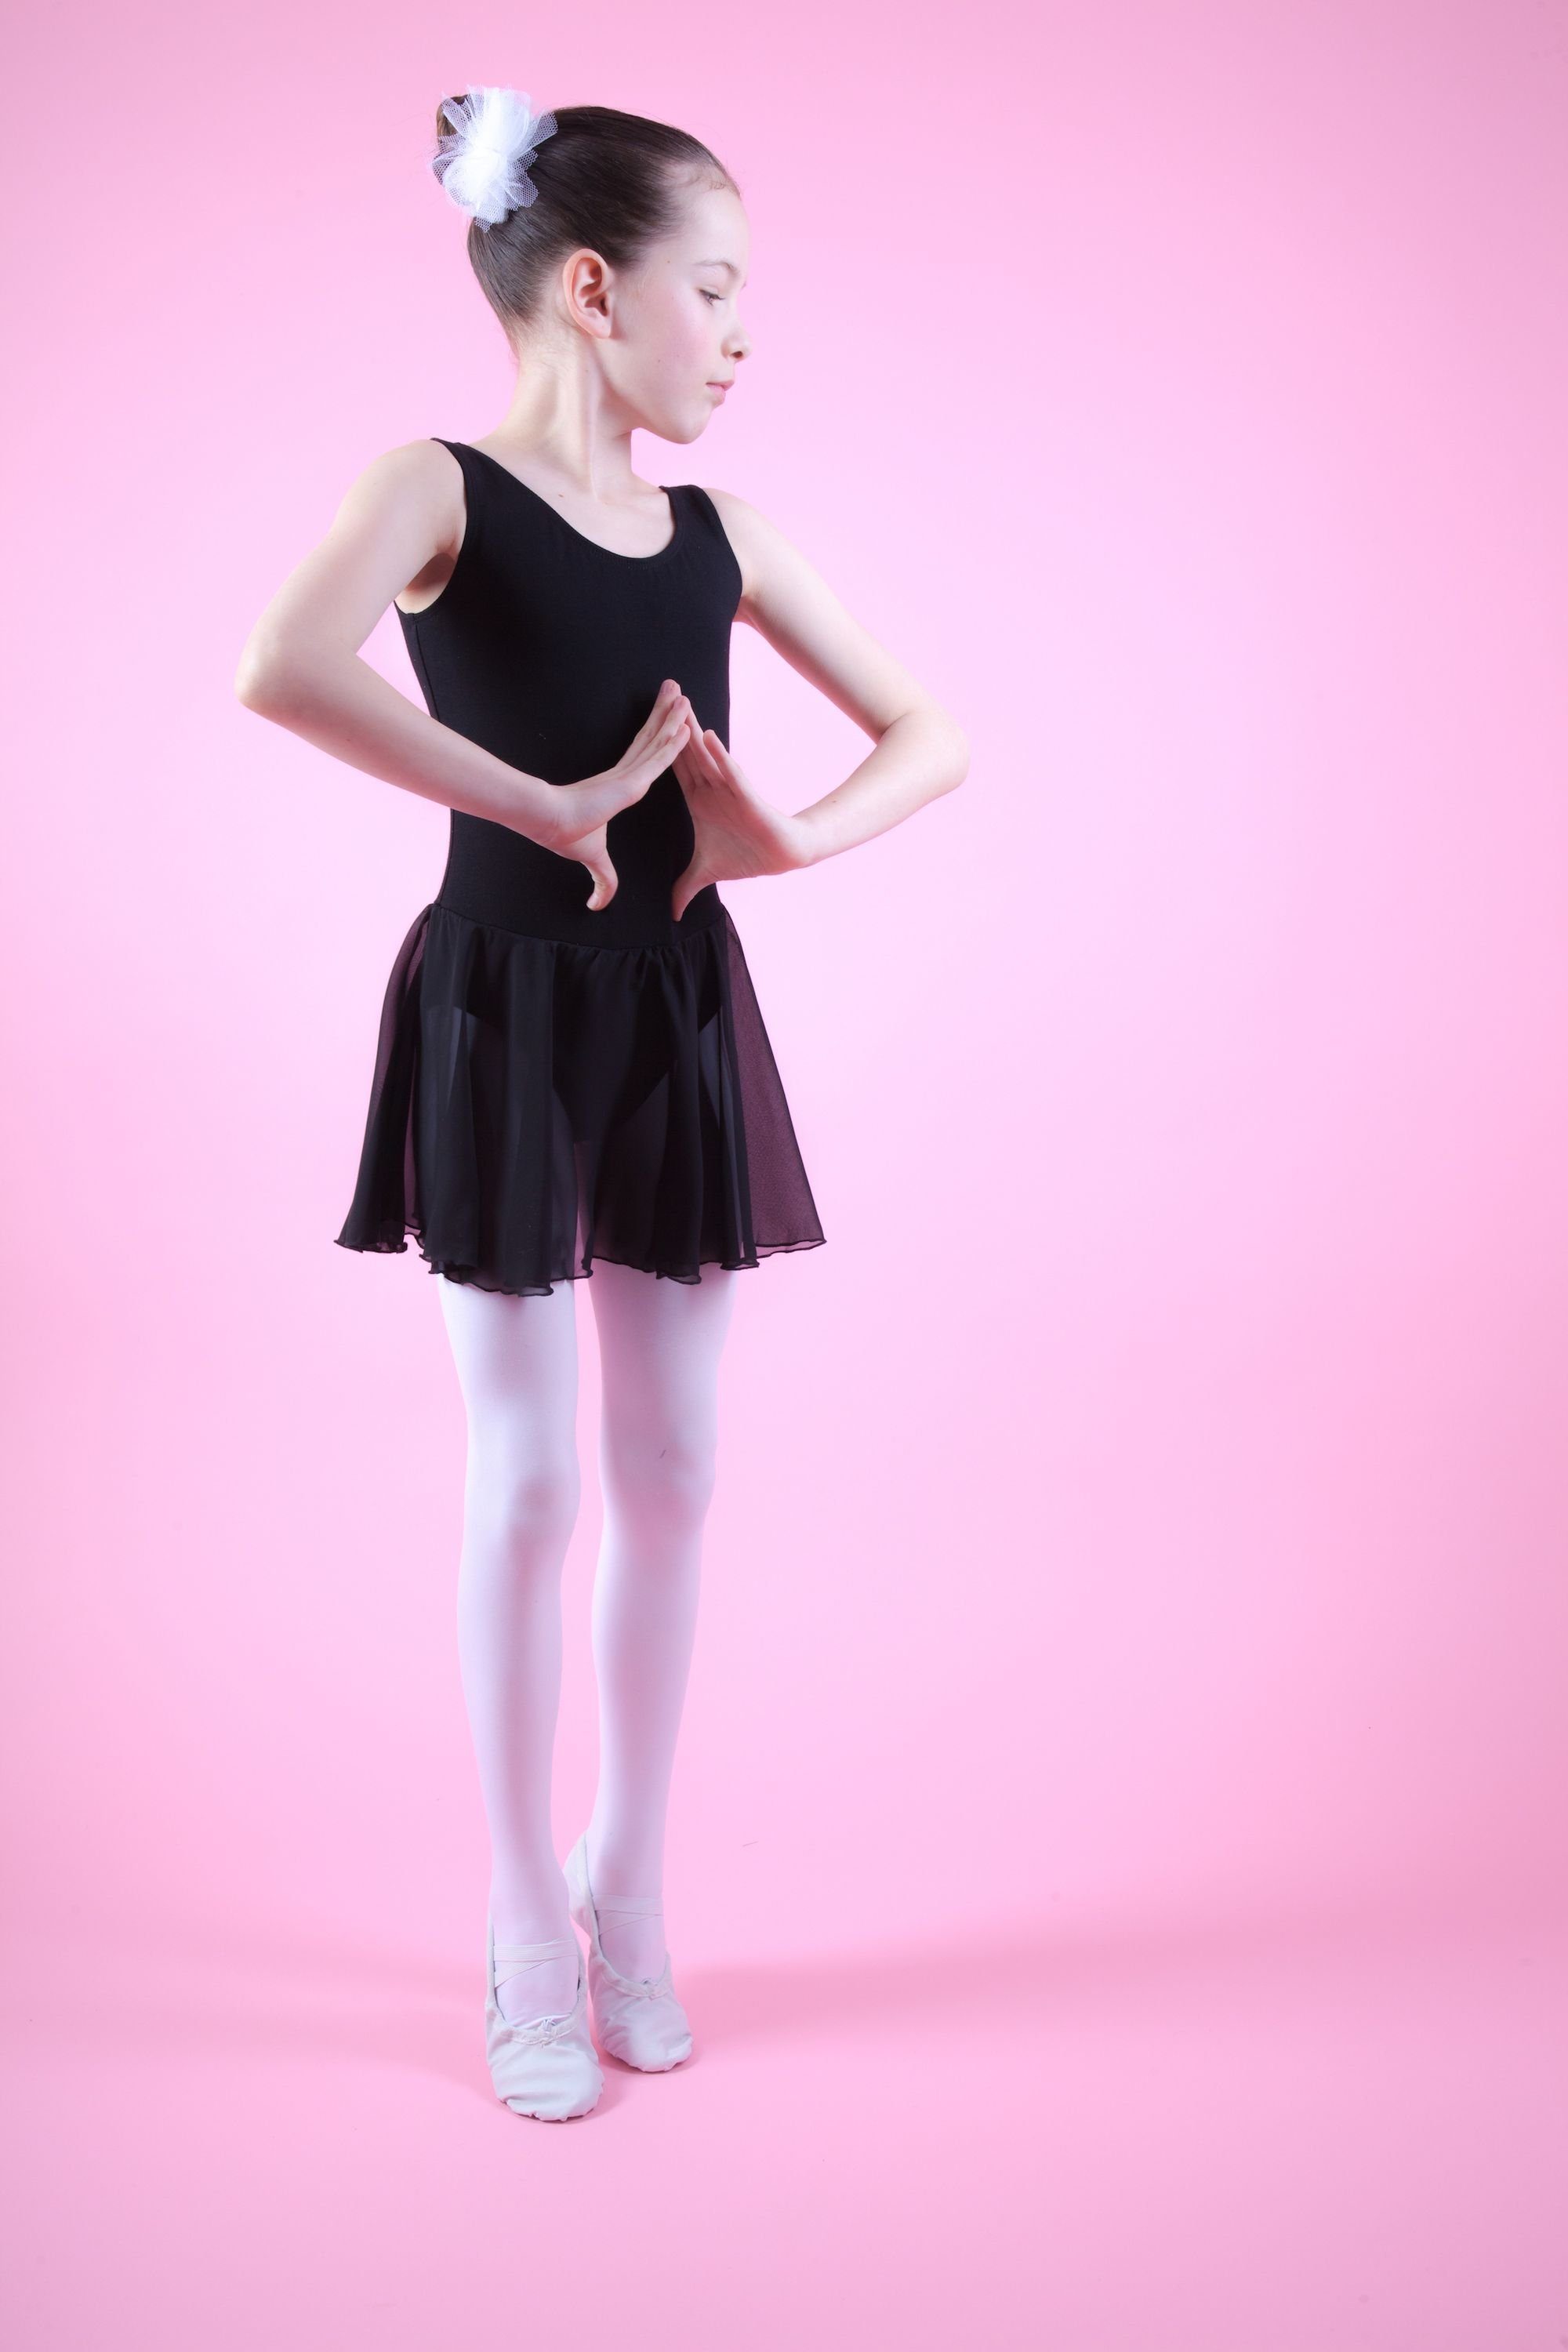 Trikot mit Baumwollmaterial Chiffonkleid aus wunderbar schwarz Röckchen Ballett weichem Mädchen Minnie Chiffon für tanzmuster Ballettkleid